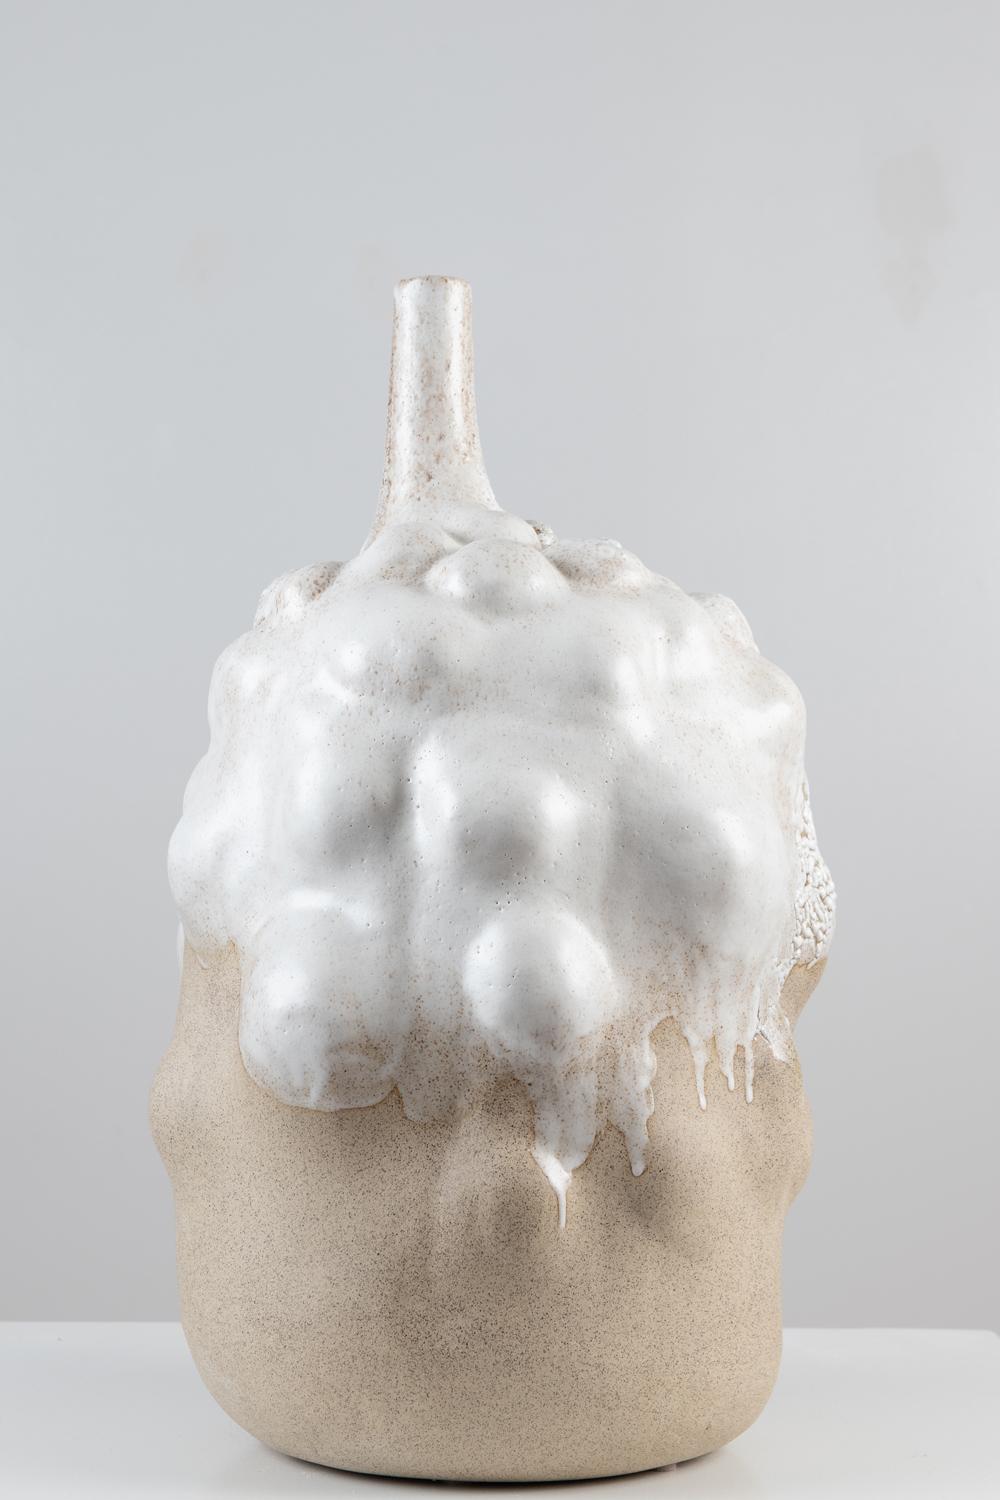 Contemporary Spora Vessel in Glazed Stoneware by Trish DeMasi For Sale